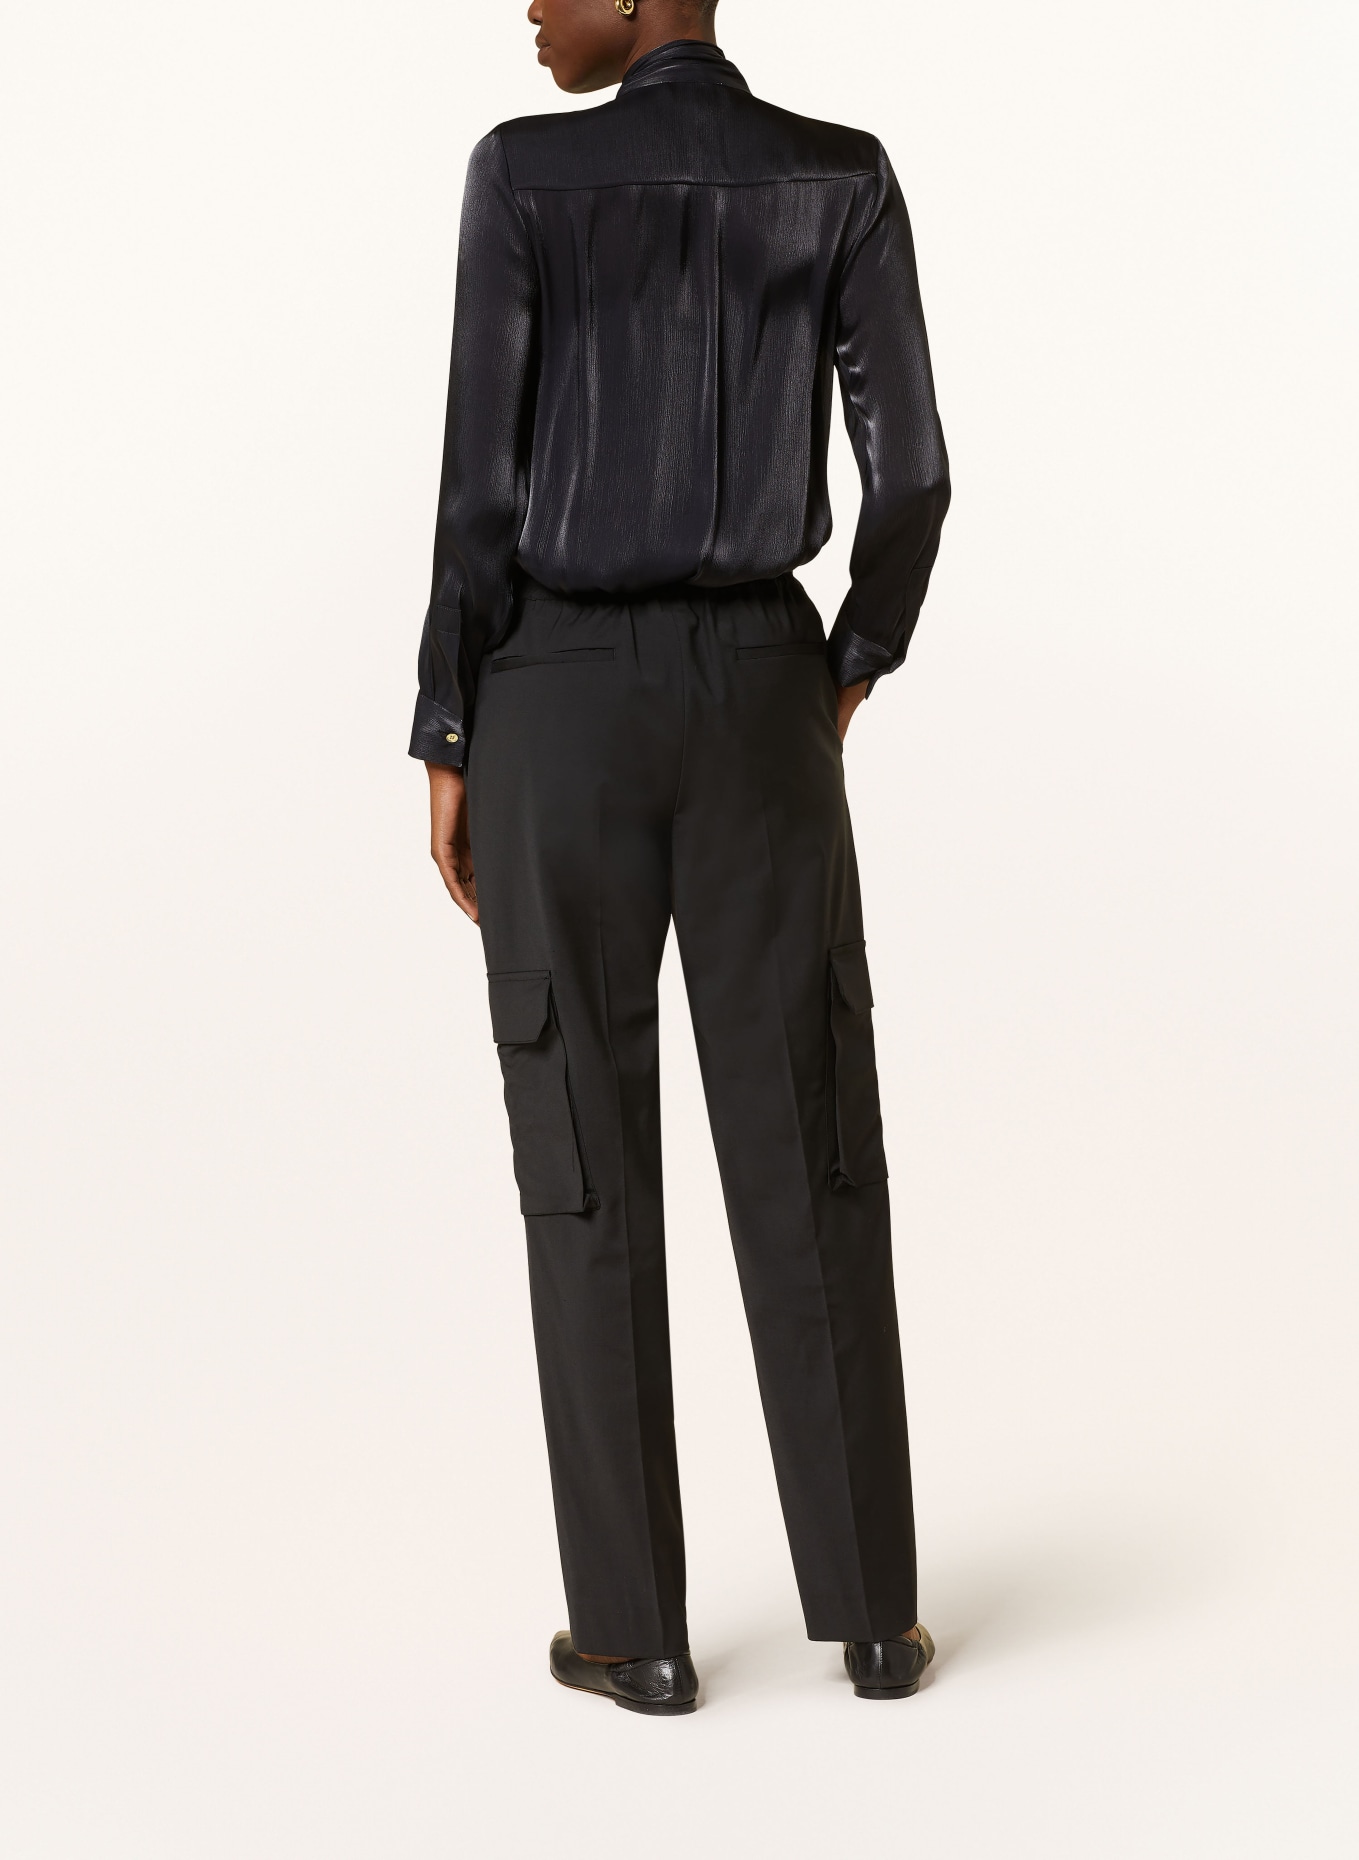 MICHAEL KORS Satin bow-tie blouse, Color: BLACK (Image 3)